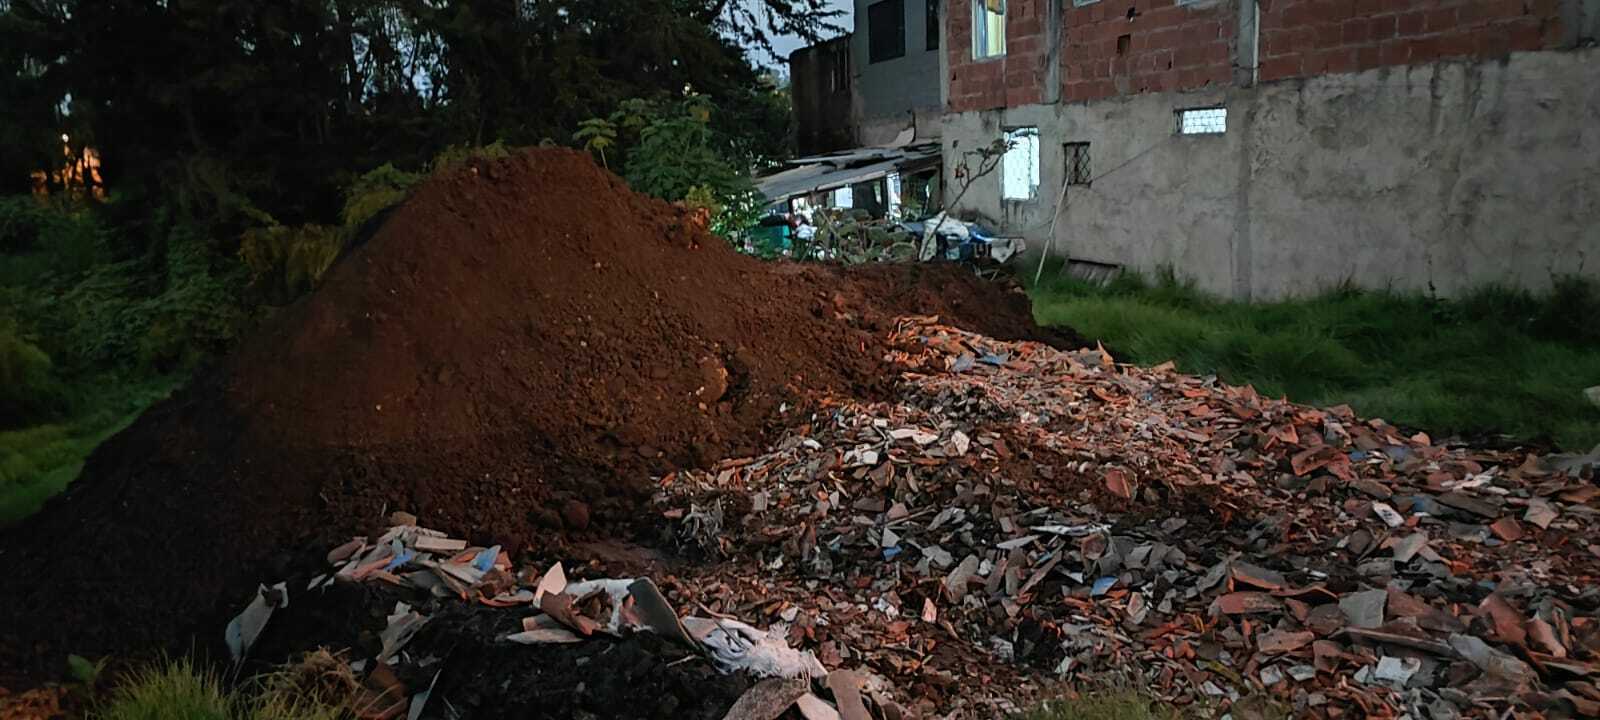 Secretaría de Ambiente impone medida preventiva de suspensión de actividades por disposición ilegal de residuos de construcción